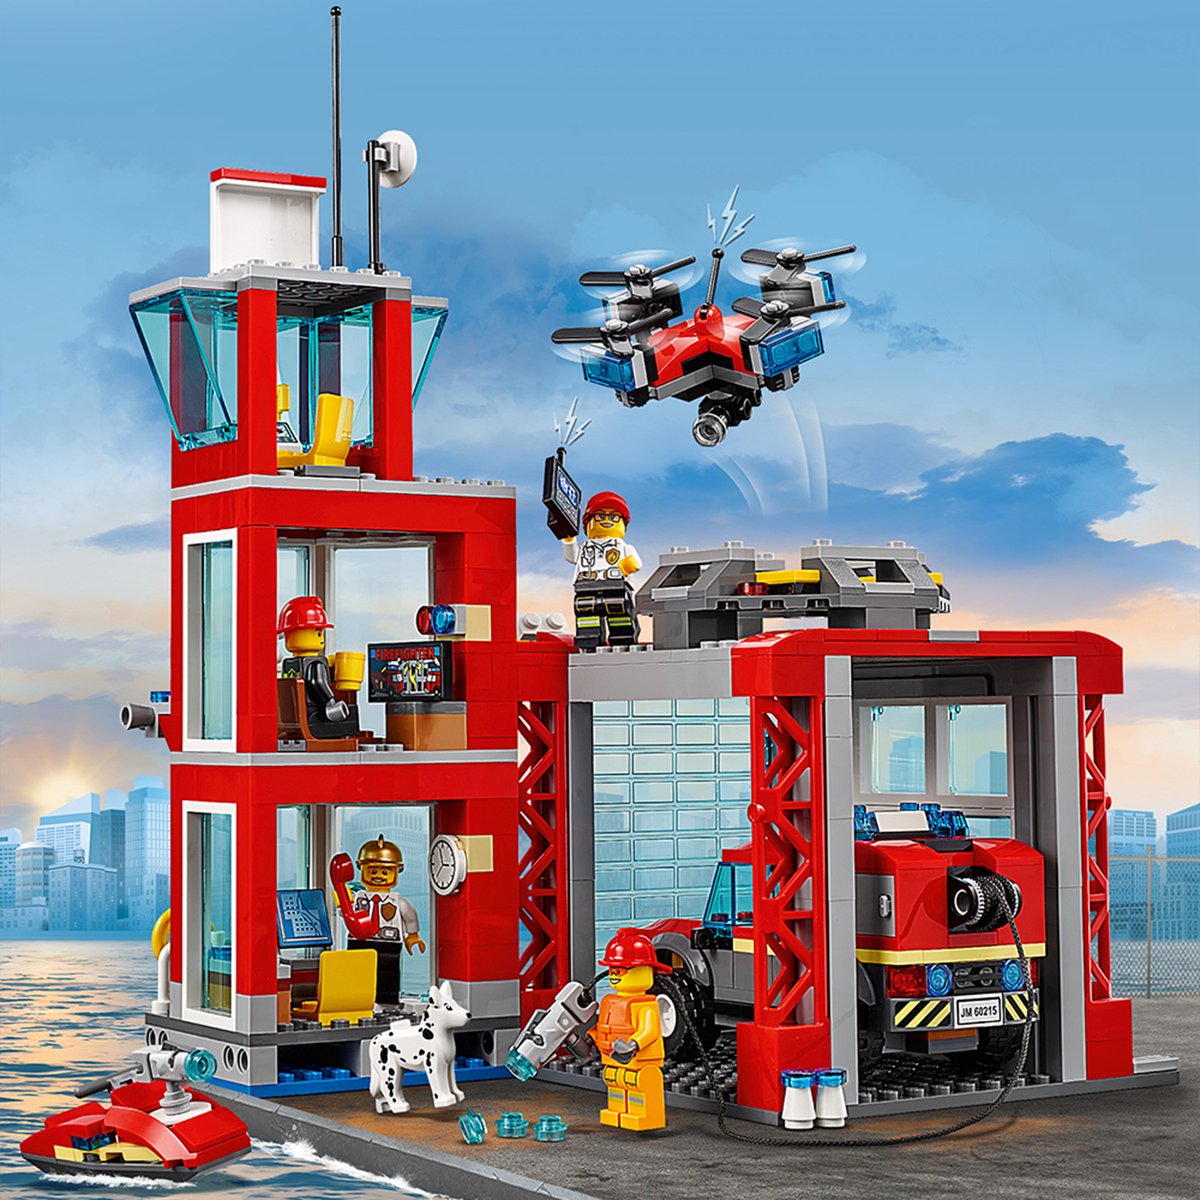 LEGO City Brandweerkazerne - 60215 | bol.com